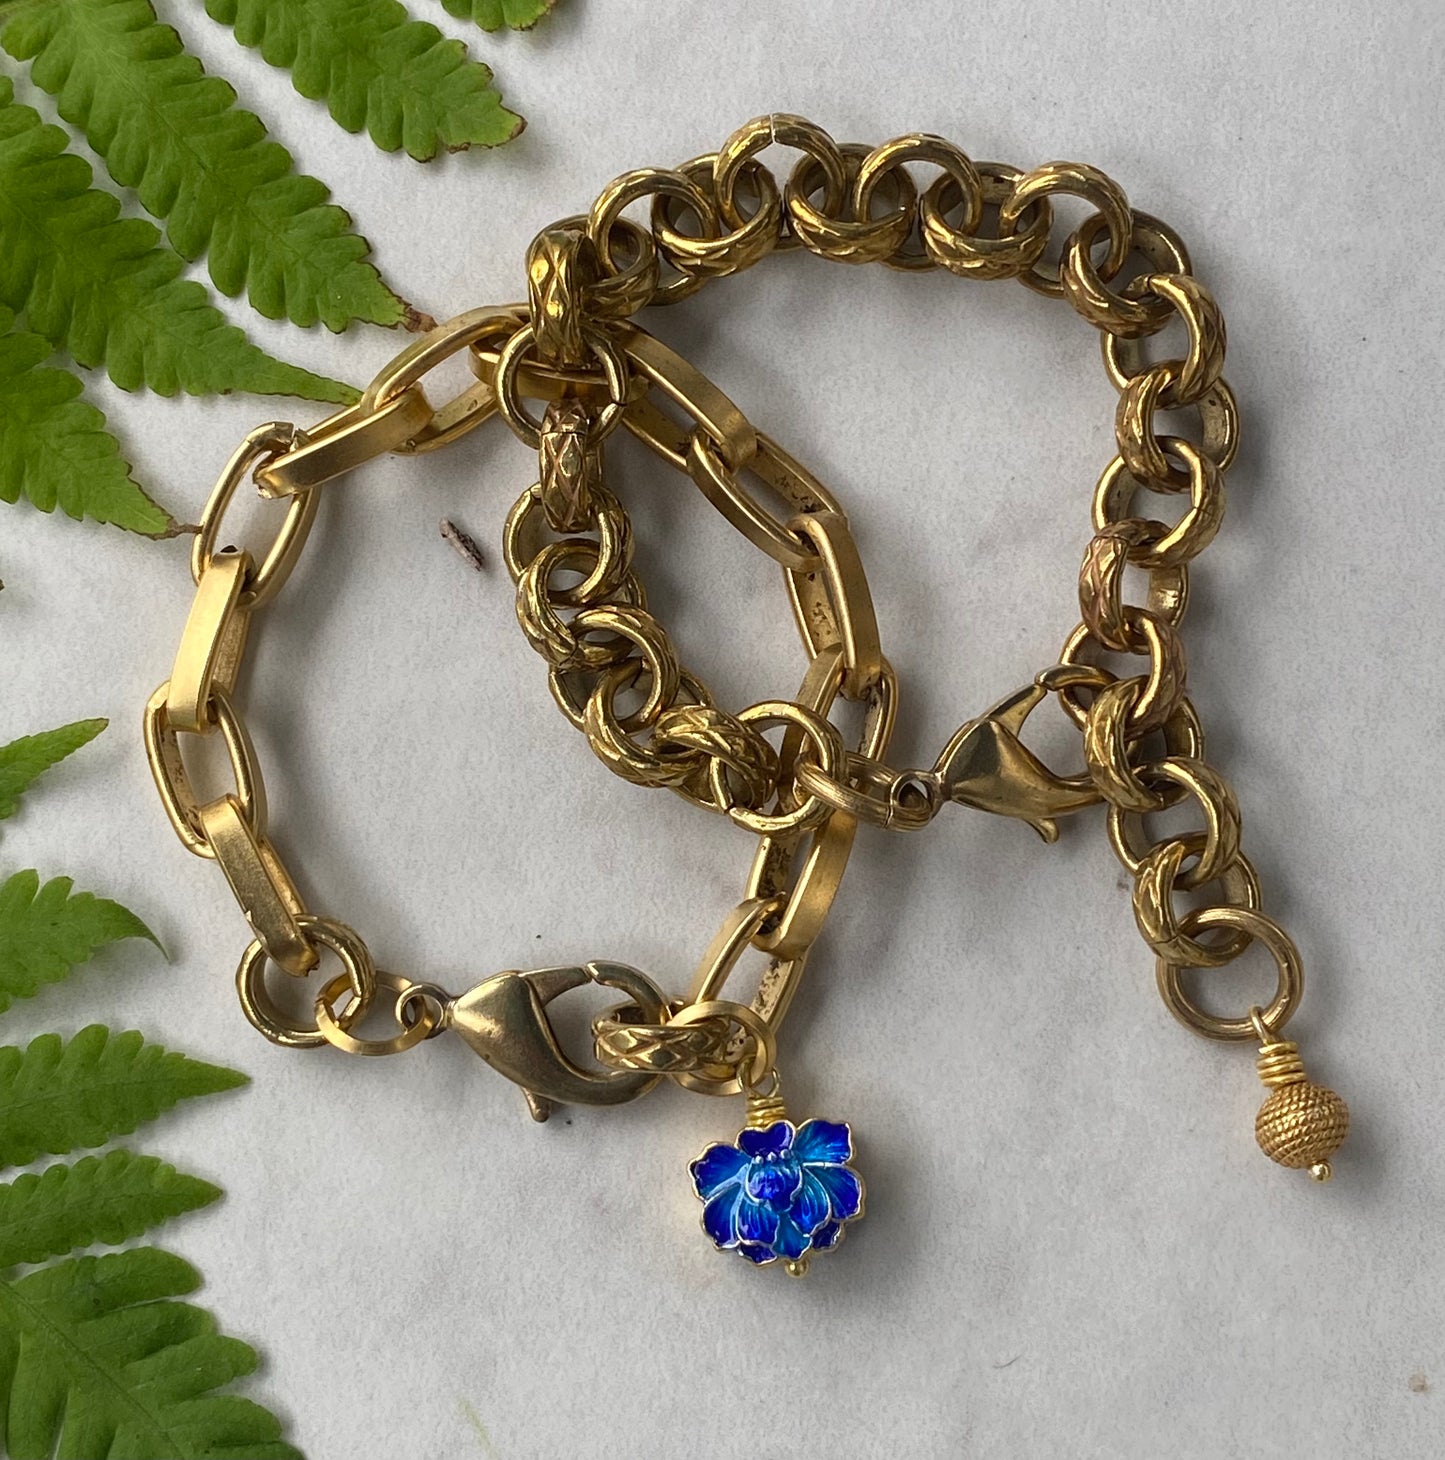 Memoirs of a Geisha Chain Bracelet with Cloissone Charm